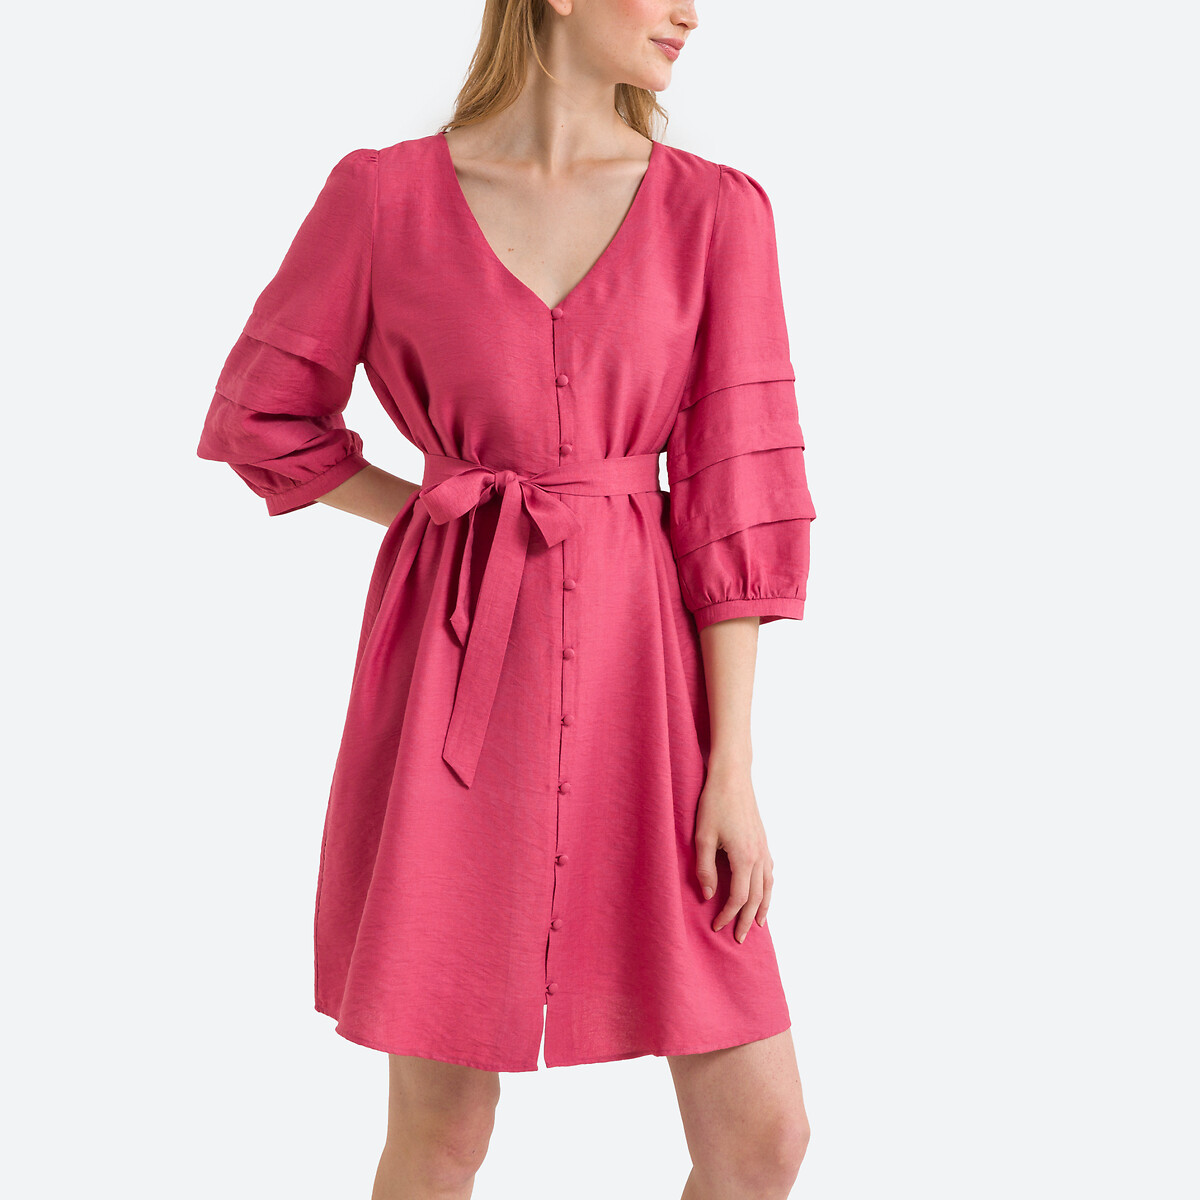 Платье Расклешенное на пуговицах 2(M) розовый